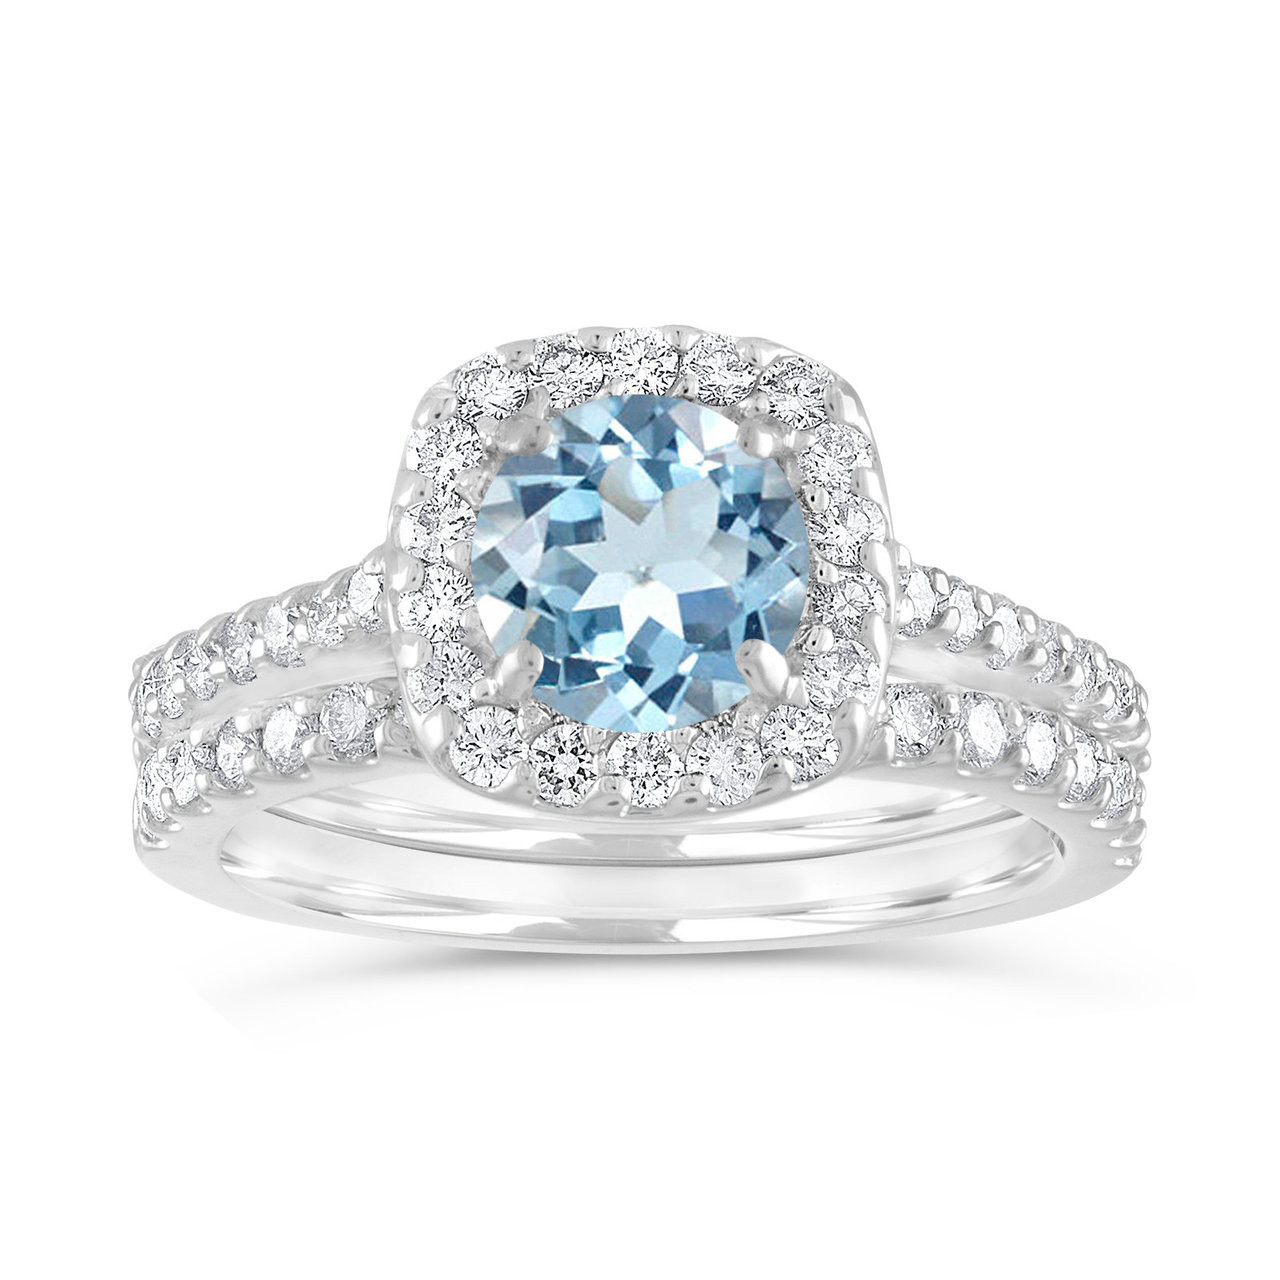 White gold aquamarine and diamond ring